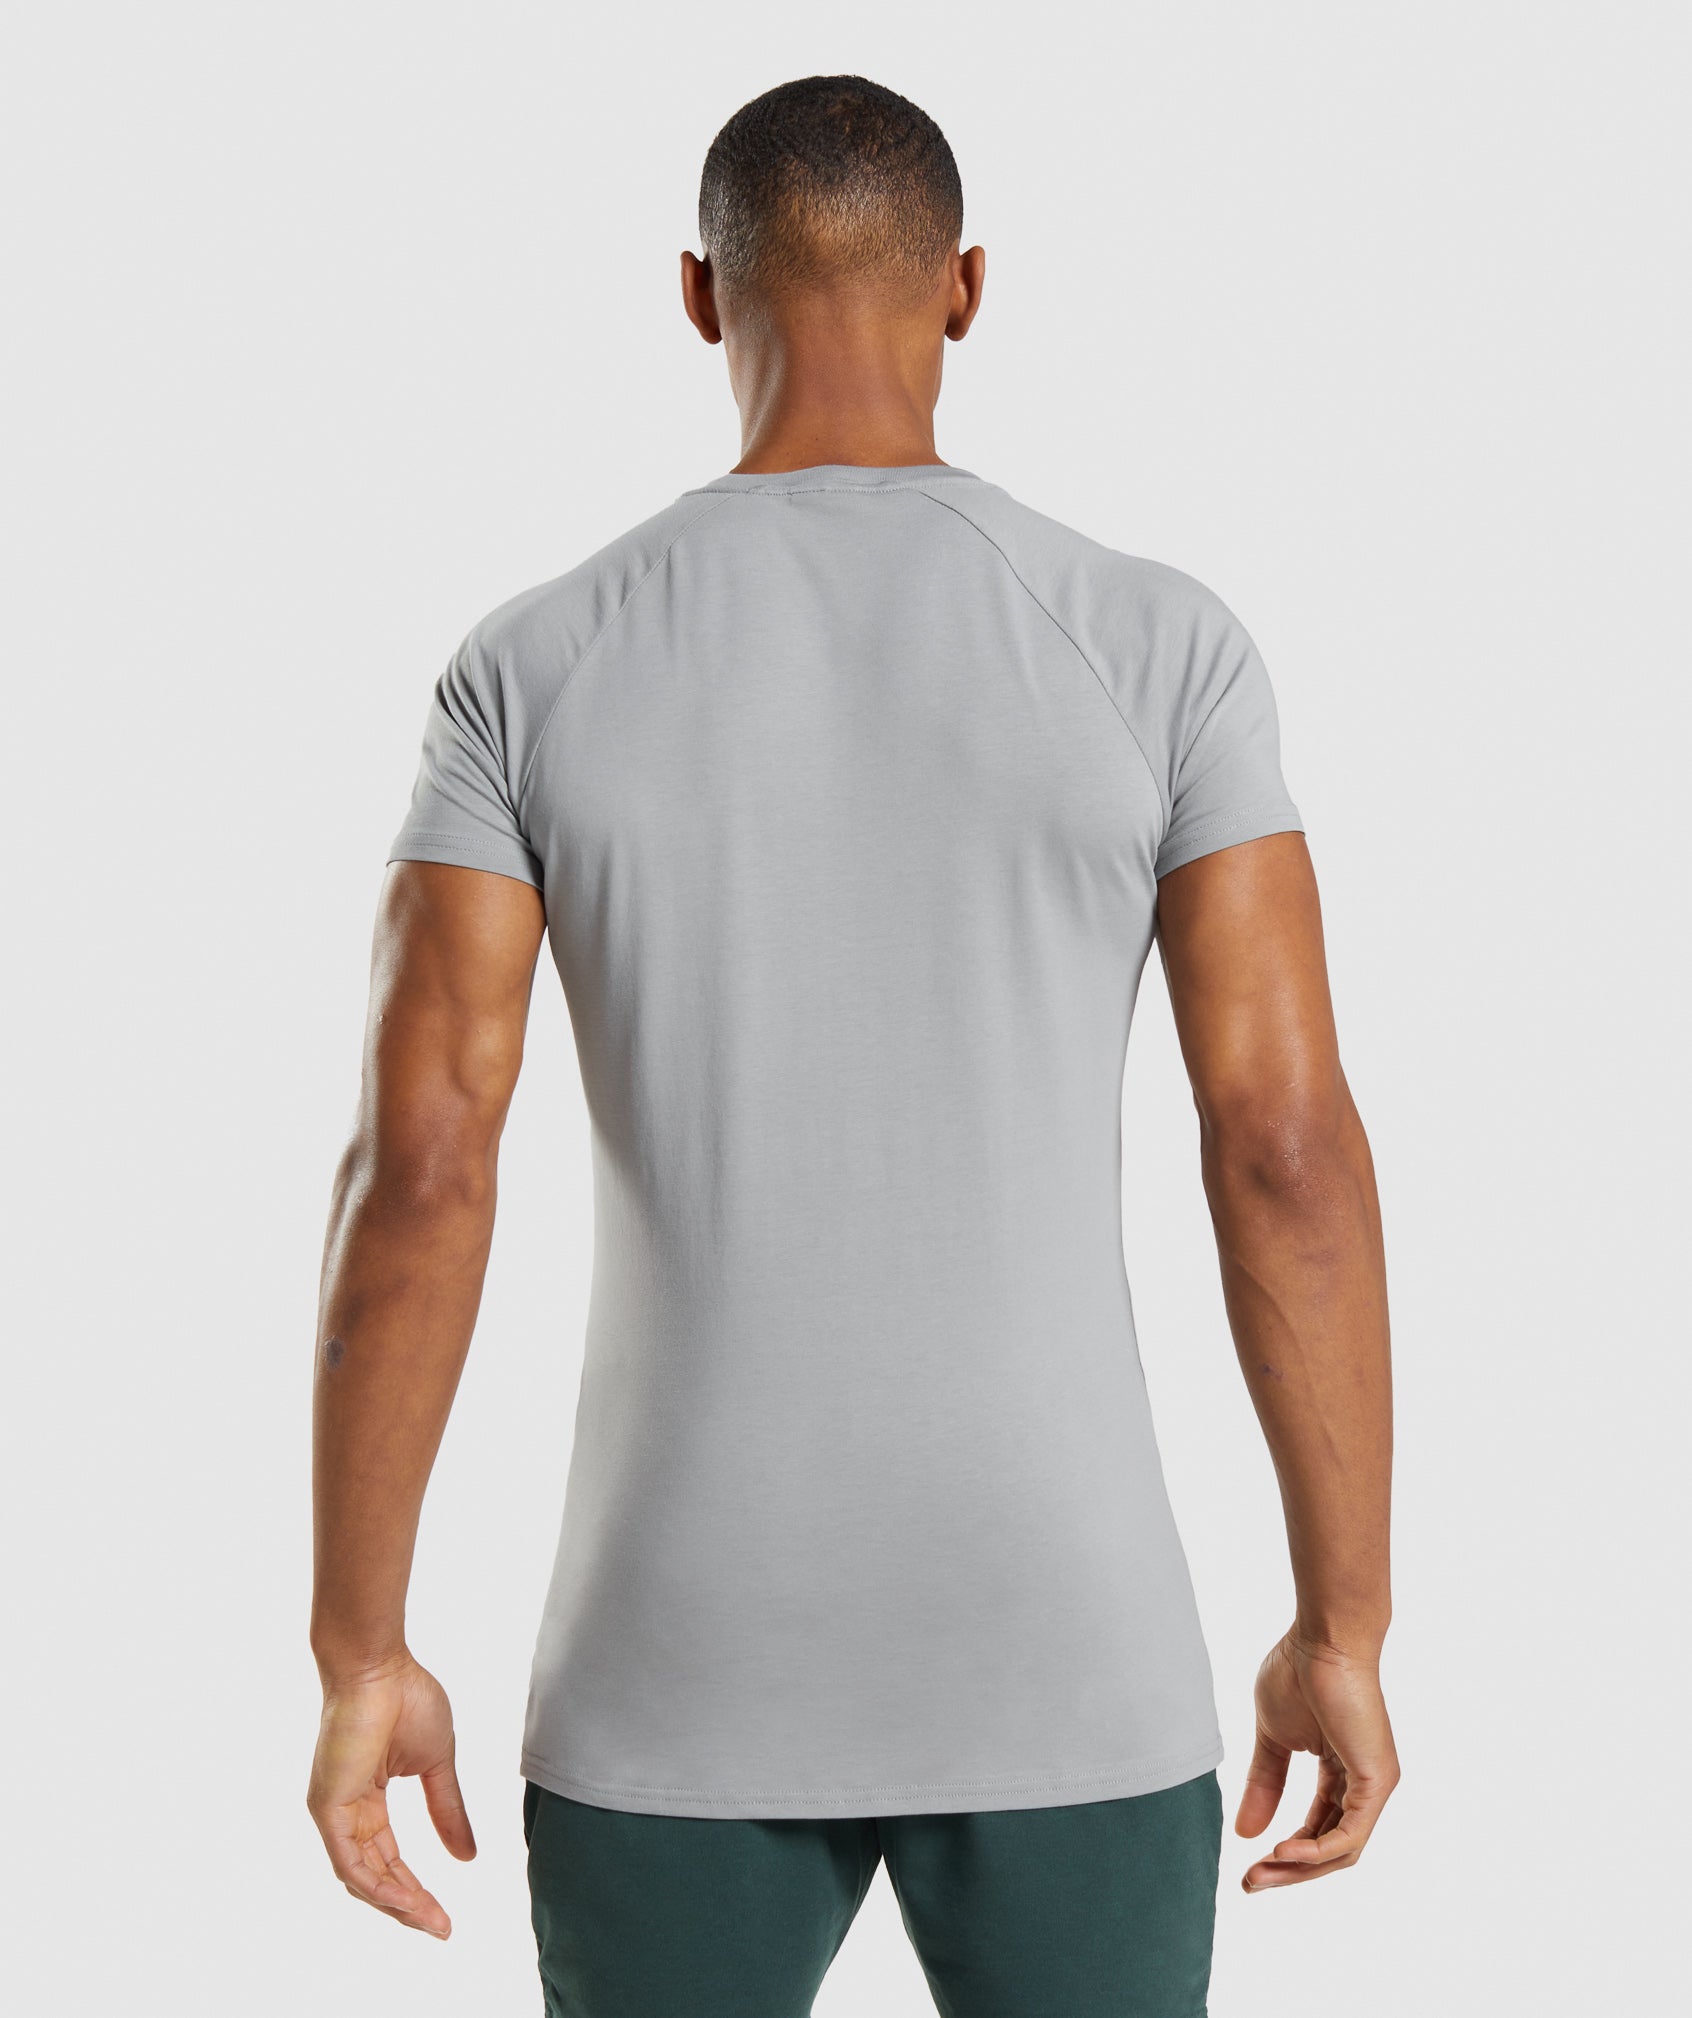 Apollo T-Shirt in Smokey Grey